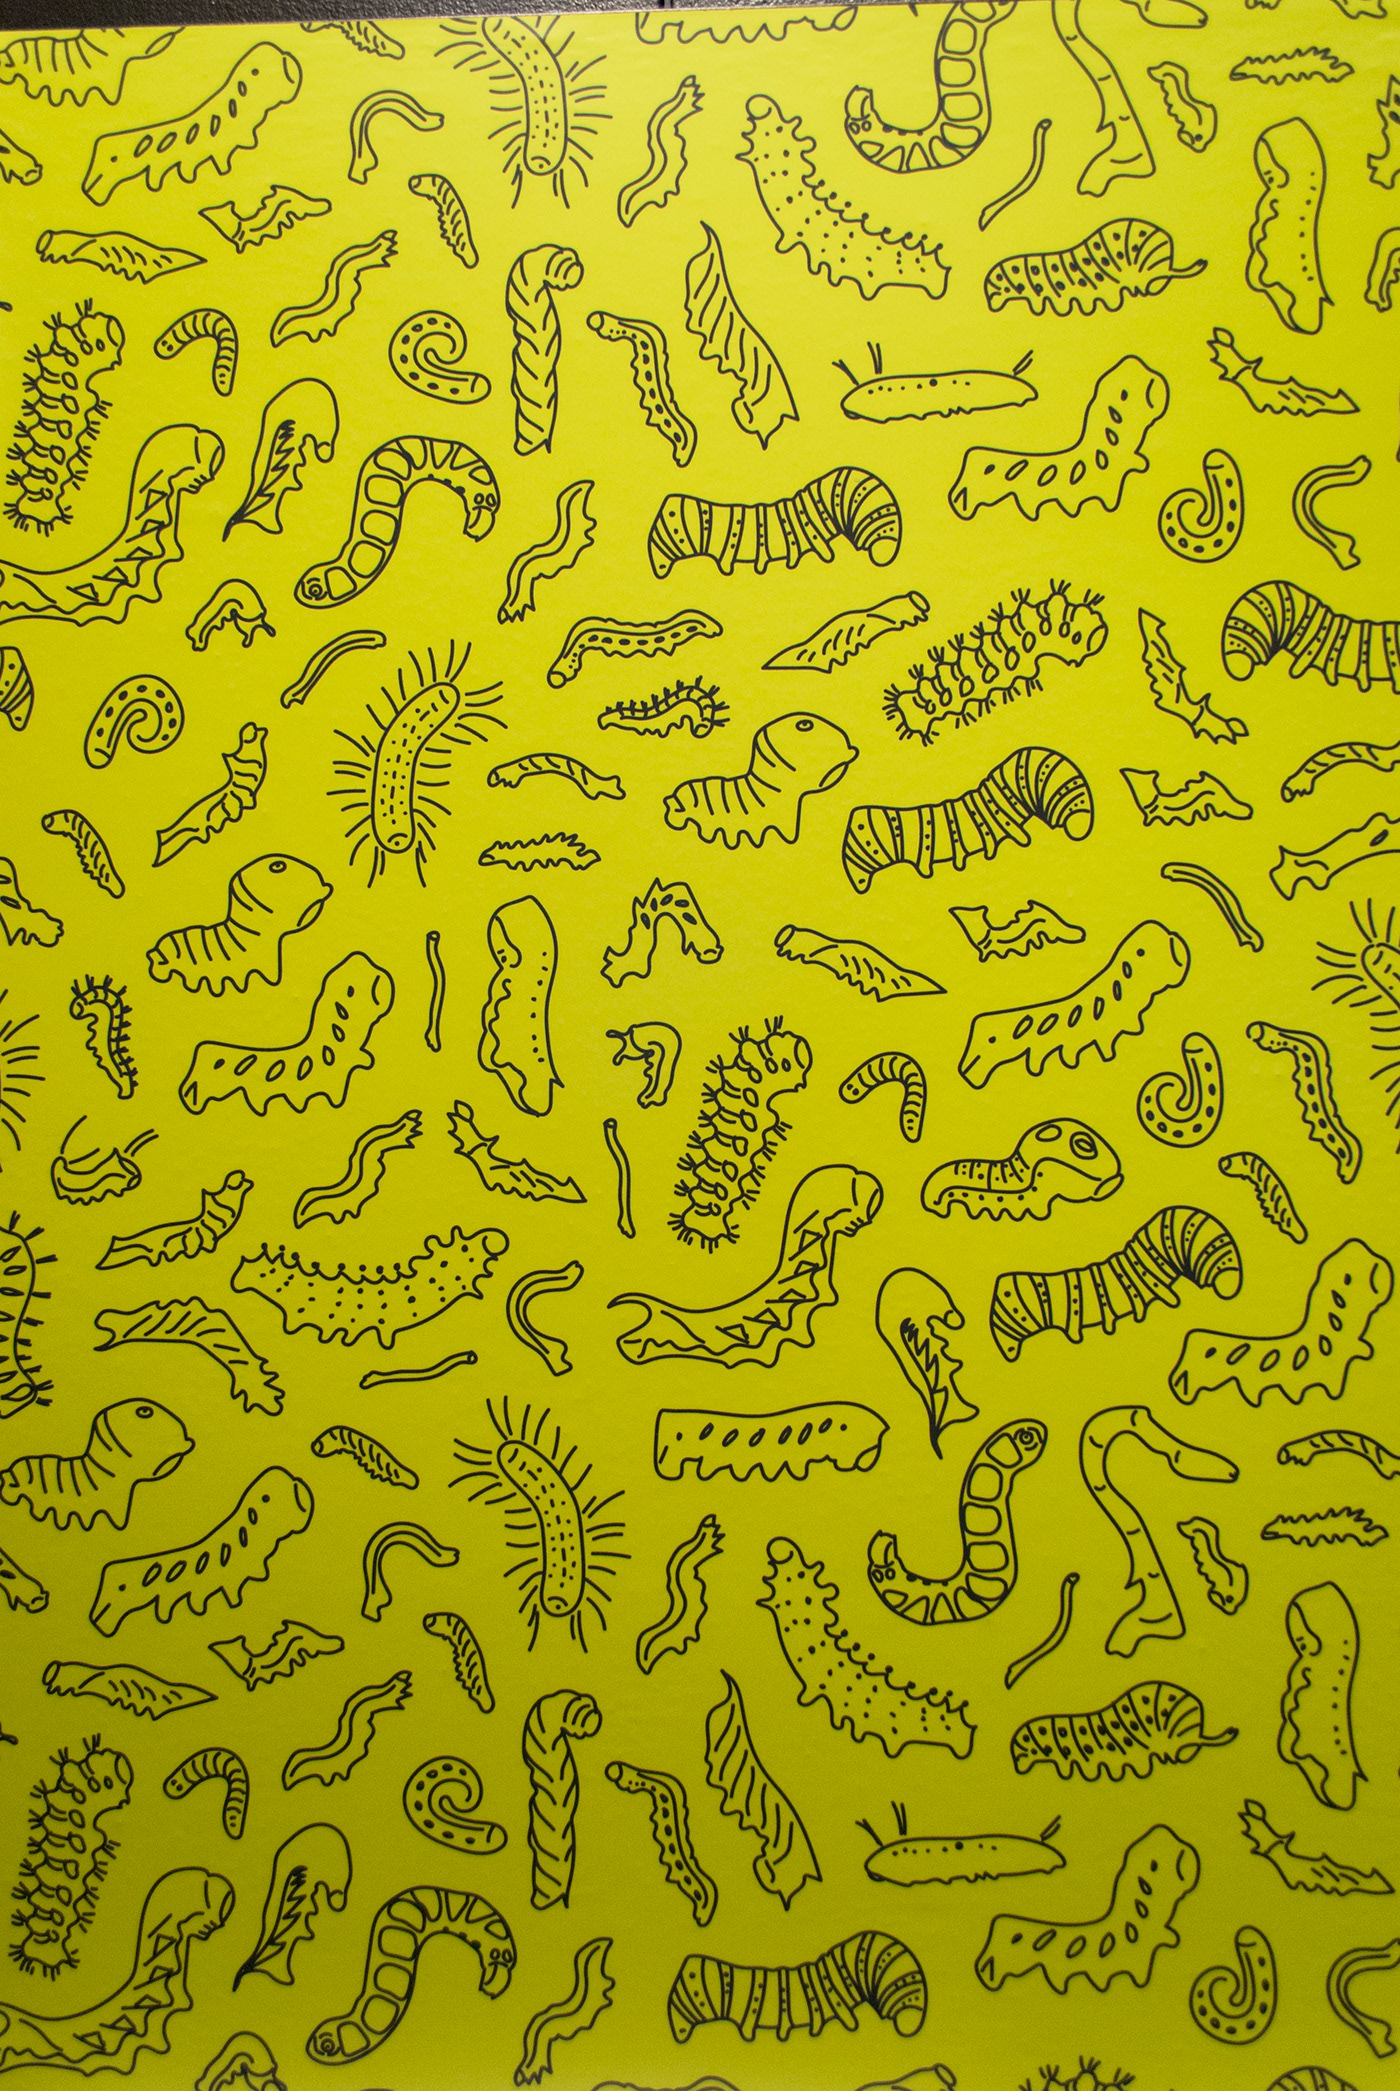 EXHIBIT DESIGN museum graphic design  science design Education natural history caterpillars